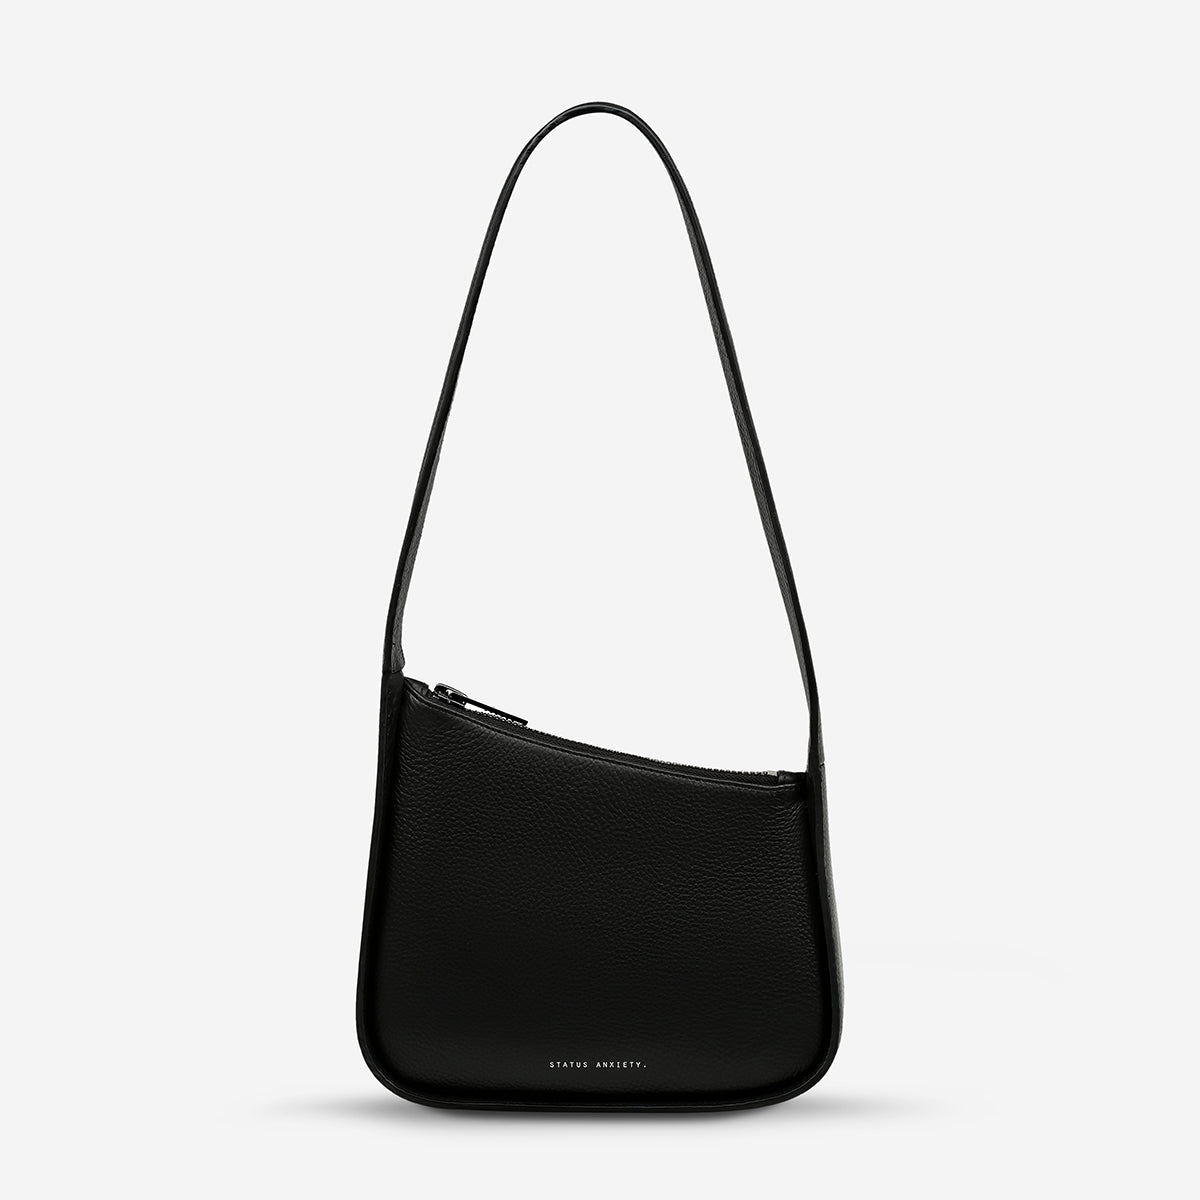 Phenomena Women's Black Leather Handbag - Status Anxiety - Mandi at Home